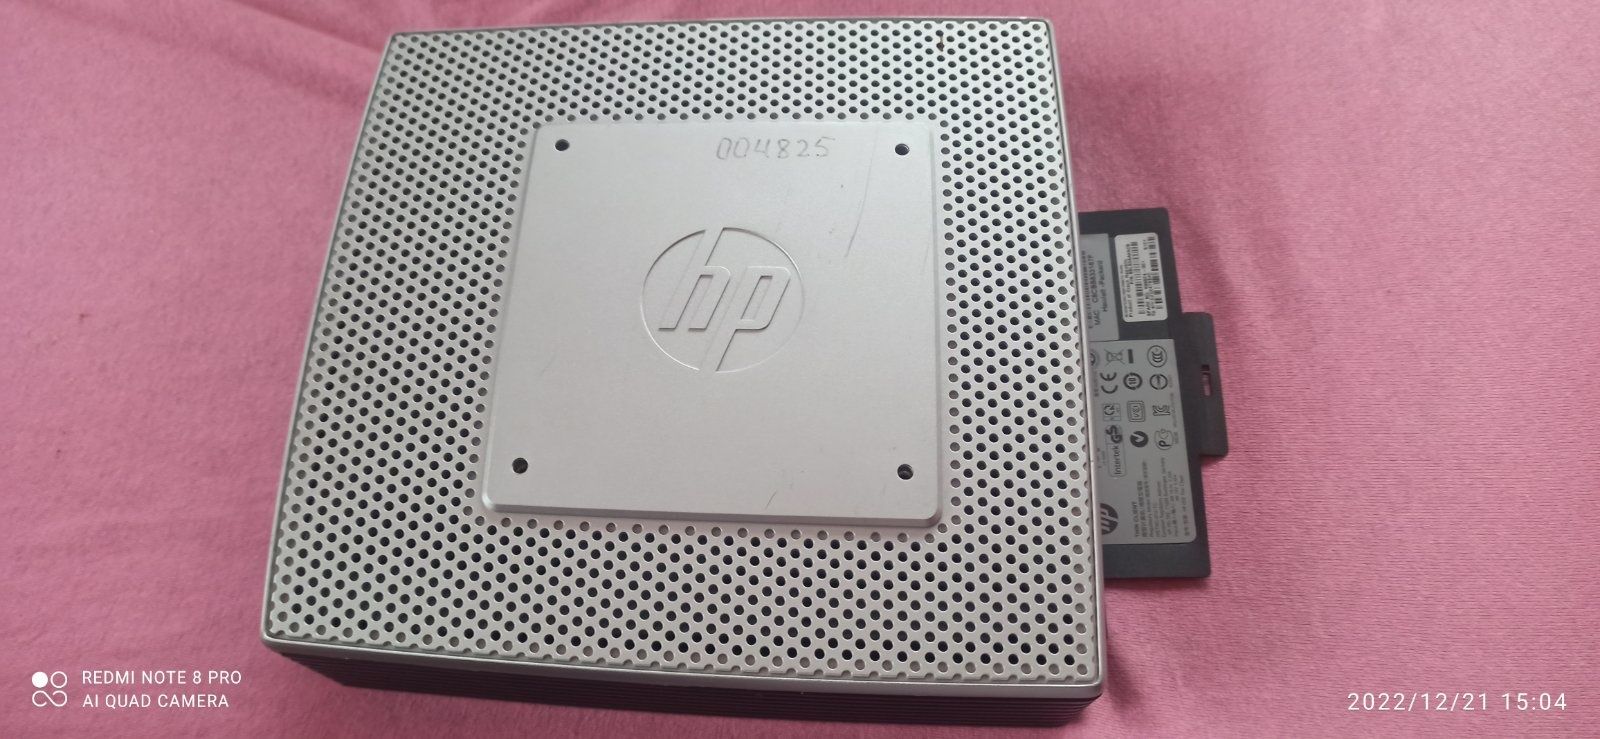 Міні ПК робочий, HP T510